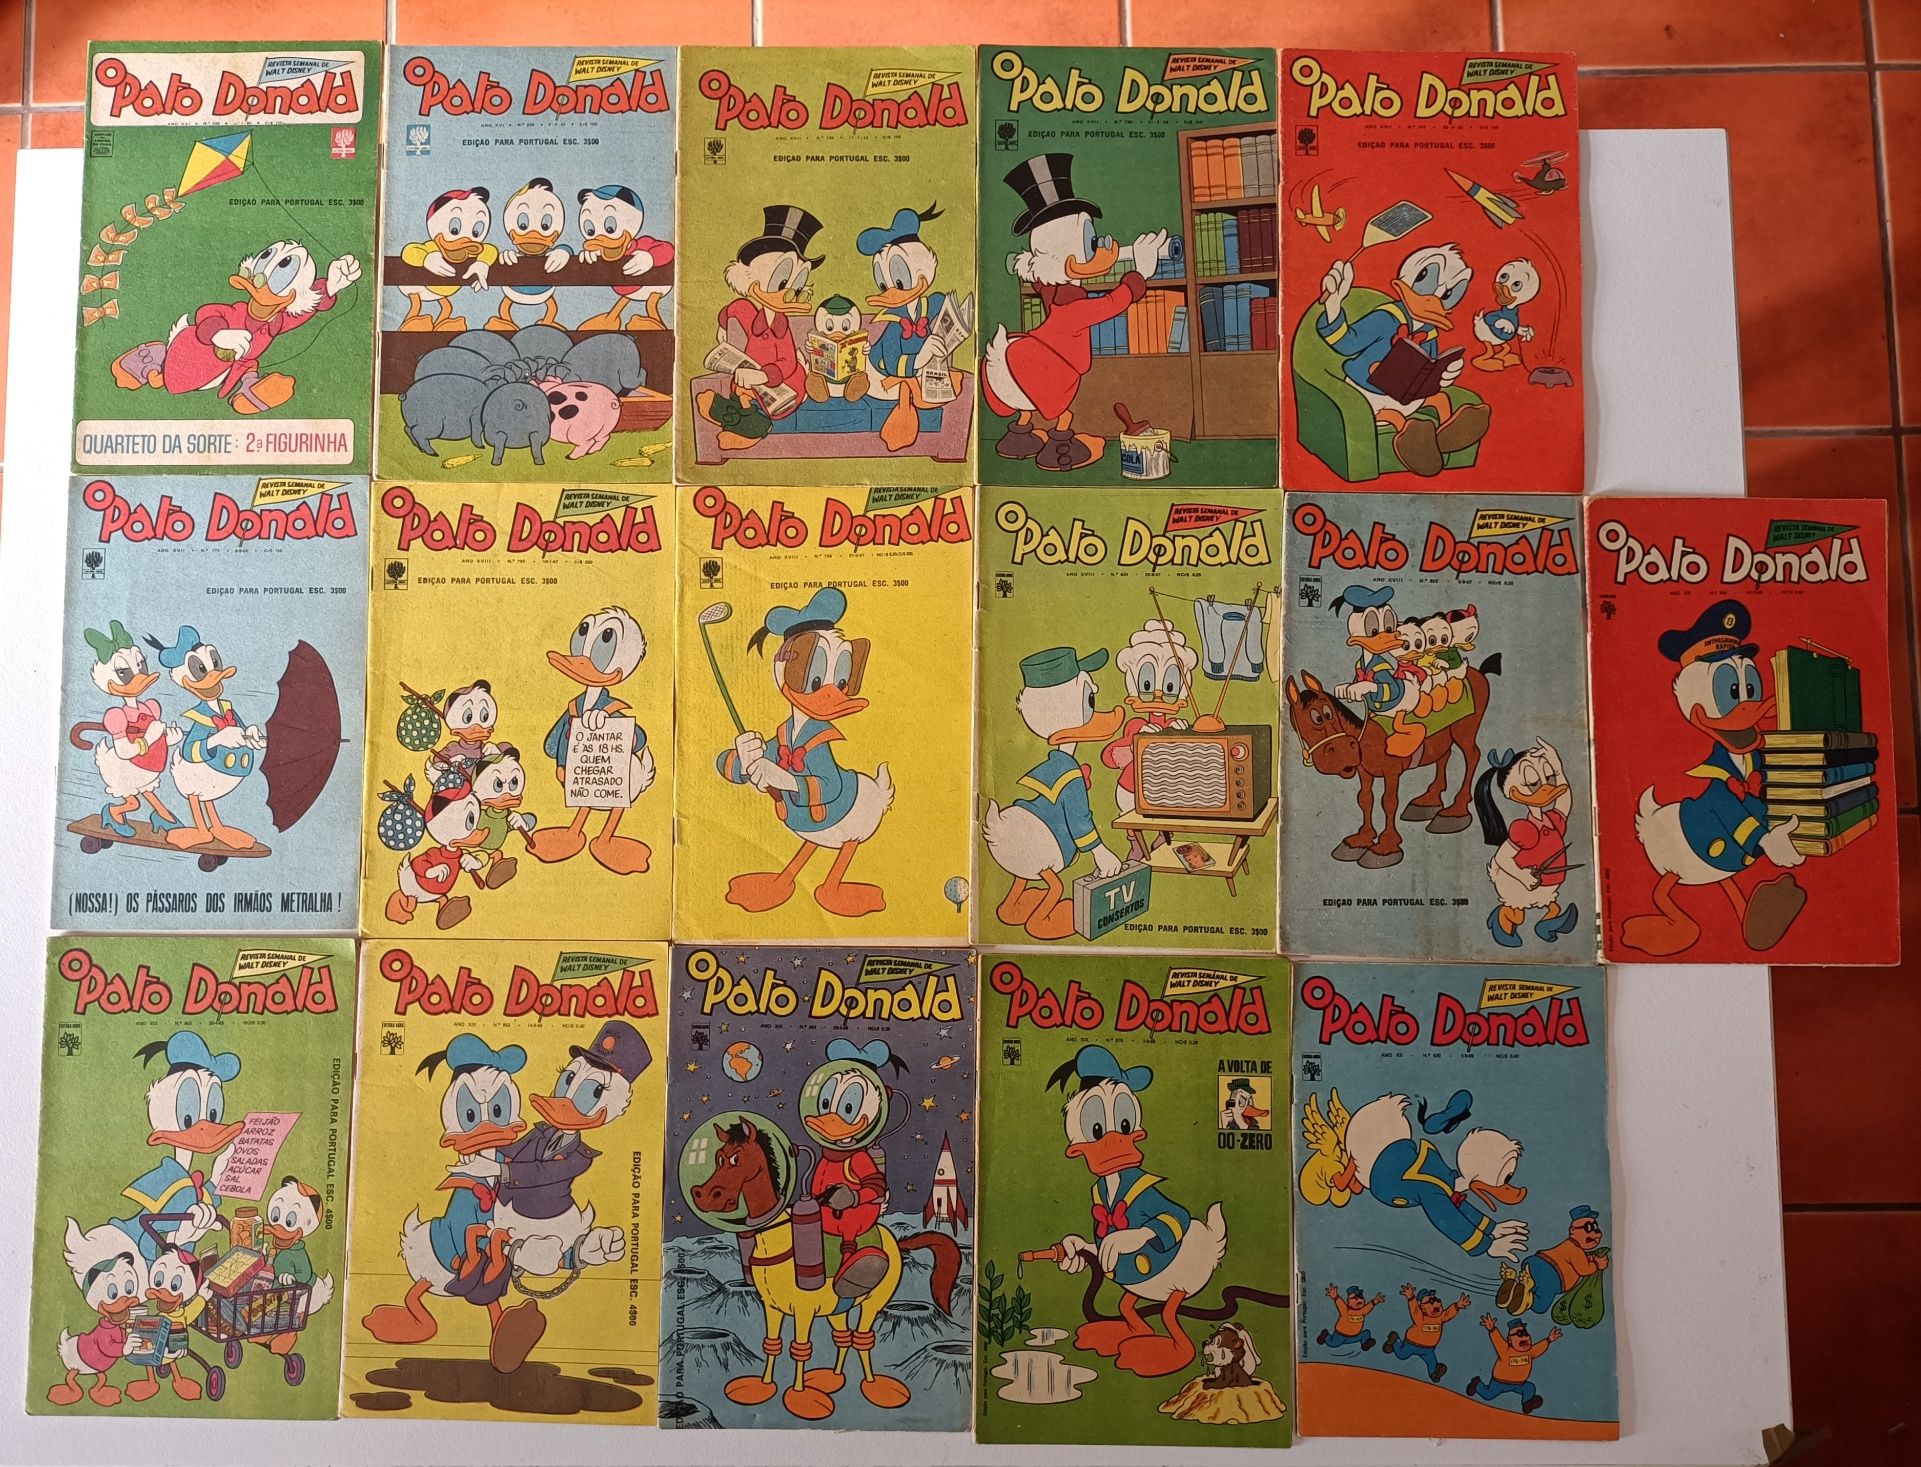 70 Livros desde 1957, Pato Donald/Zé Carioca anos 60/70 e 8 Liv. Cláss